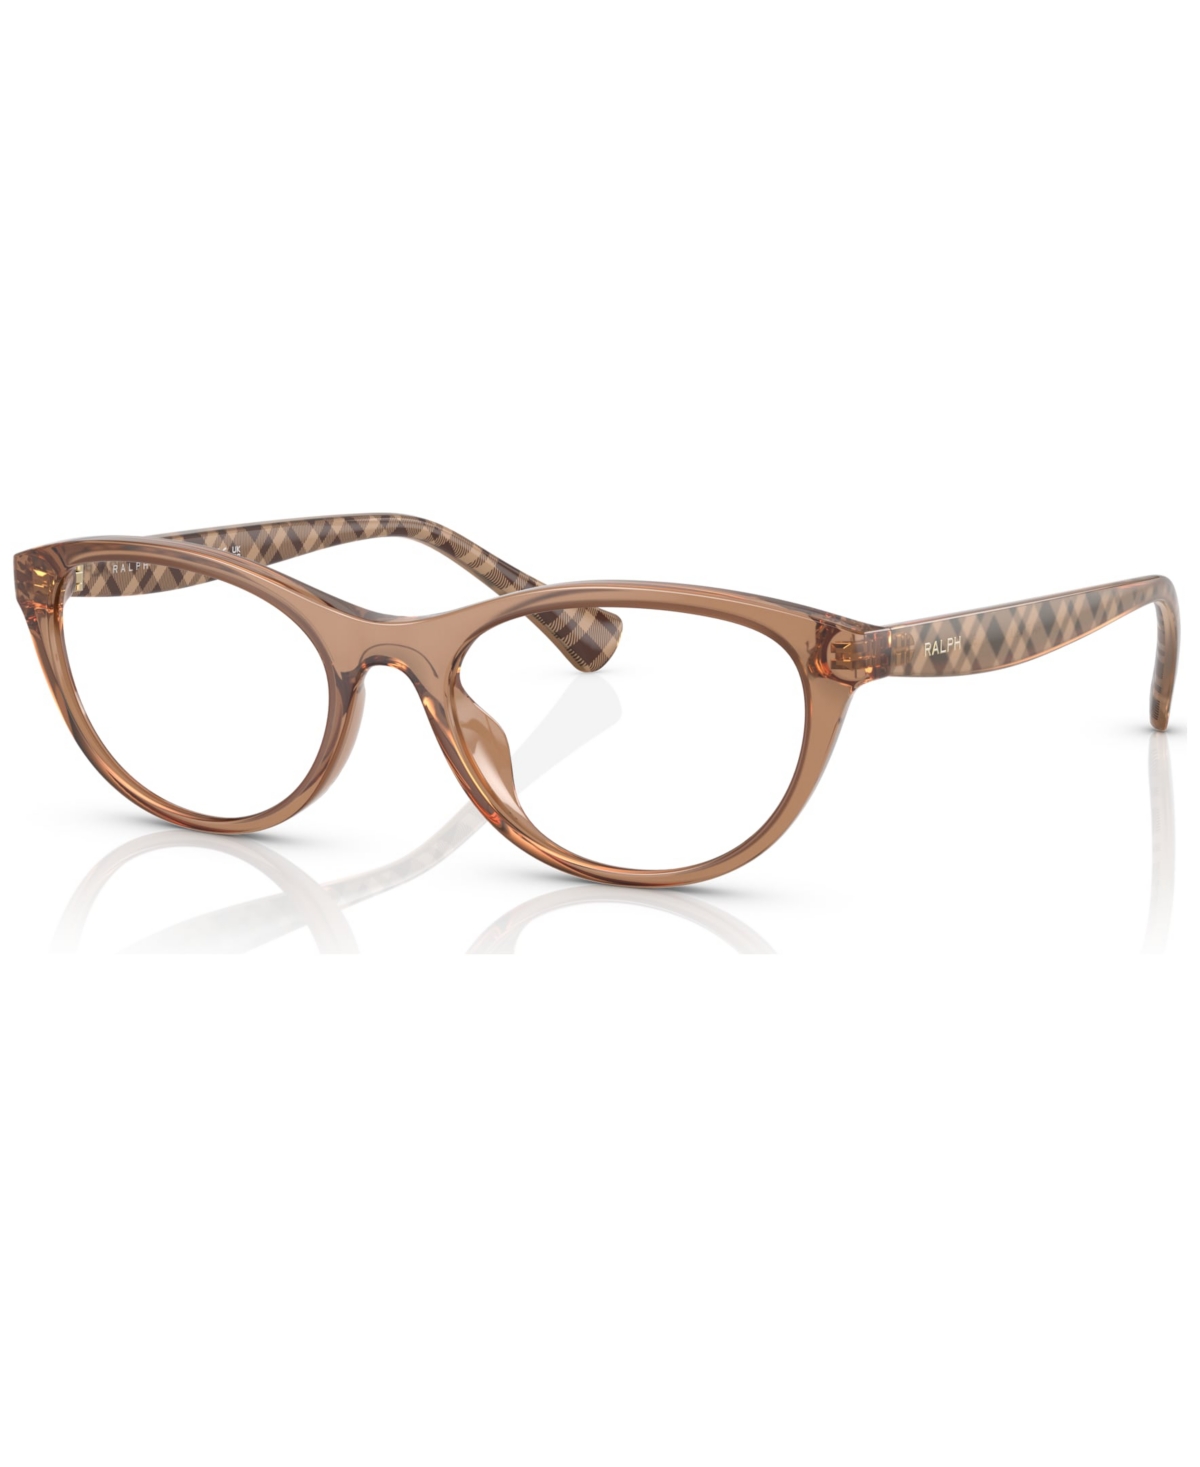 Women's Oval Eyeglasses, RA7143U51-o - Shiny Transparent Caramel